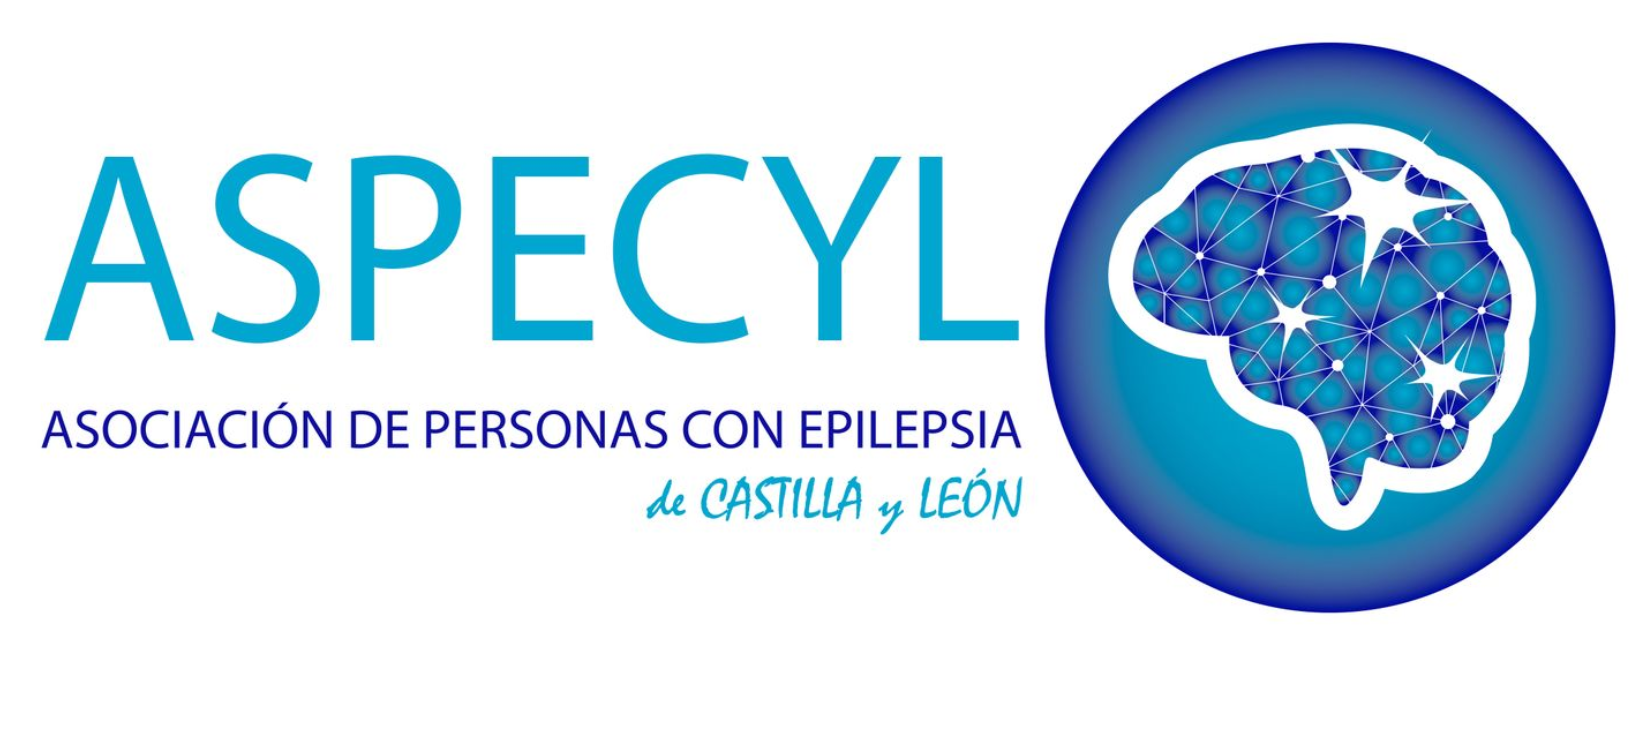 ASPECYL (Asociación de Personas con Epilepsia de Castilla y León) Profile, rate, communicate and discover